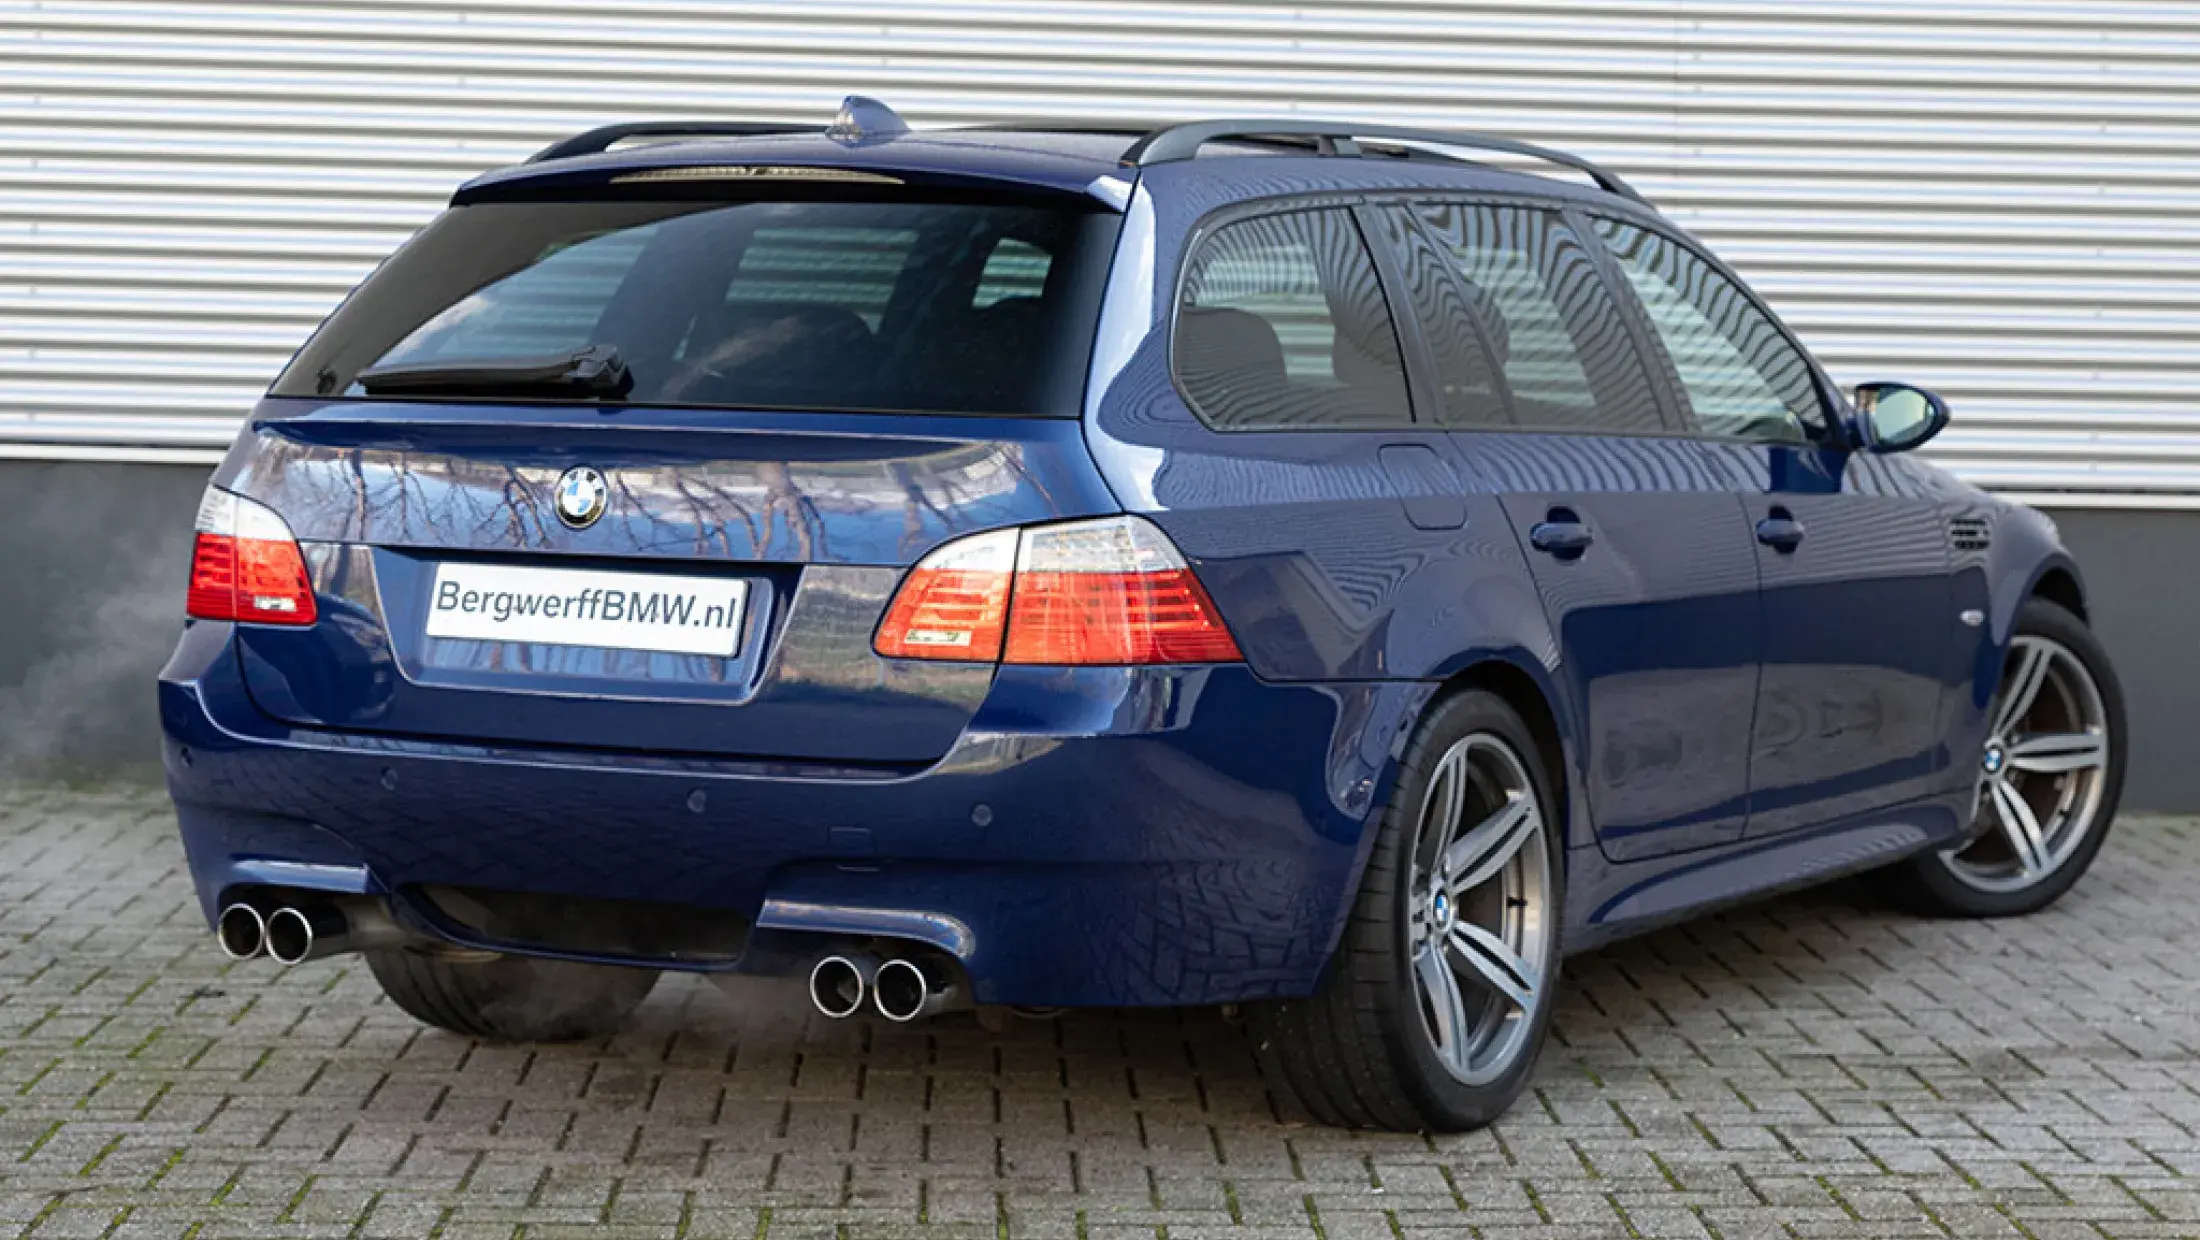 BMW M5 Touring Interlagosblau Volleder Merino  Schwarz E61 Bergwerff